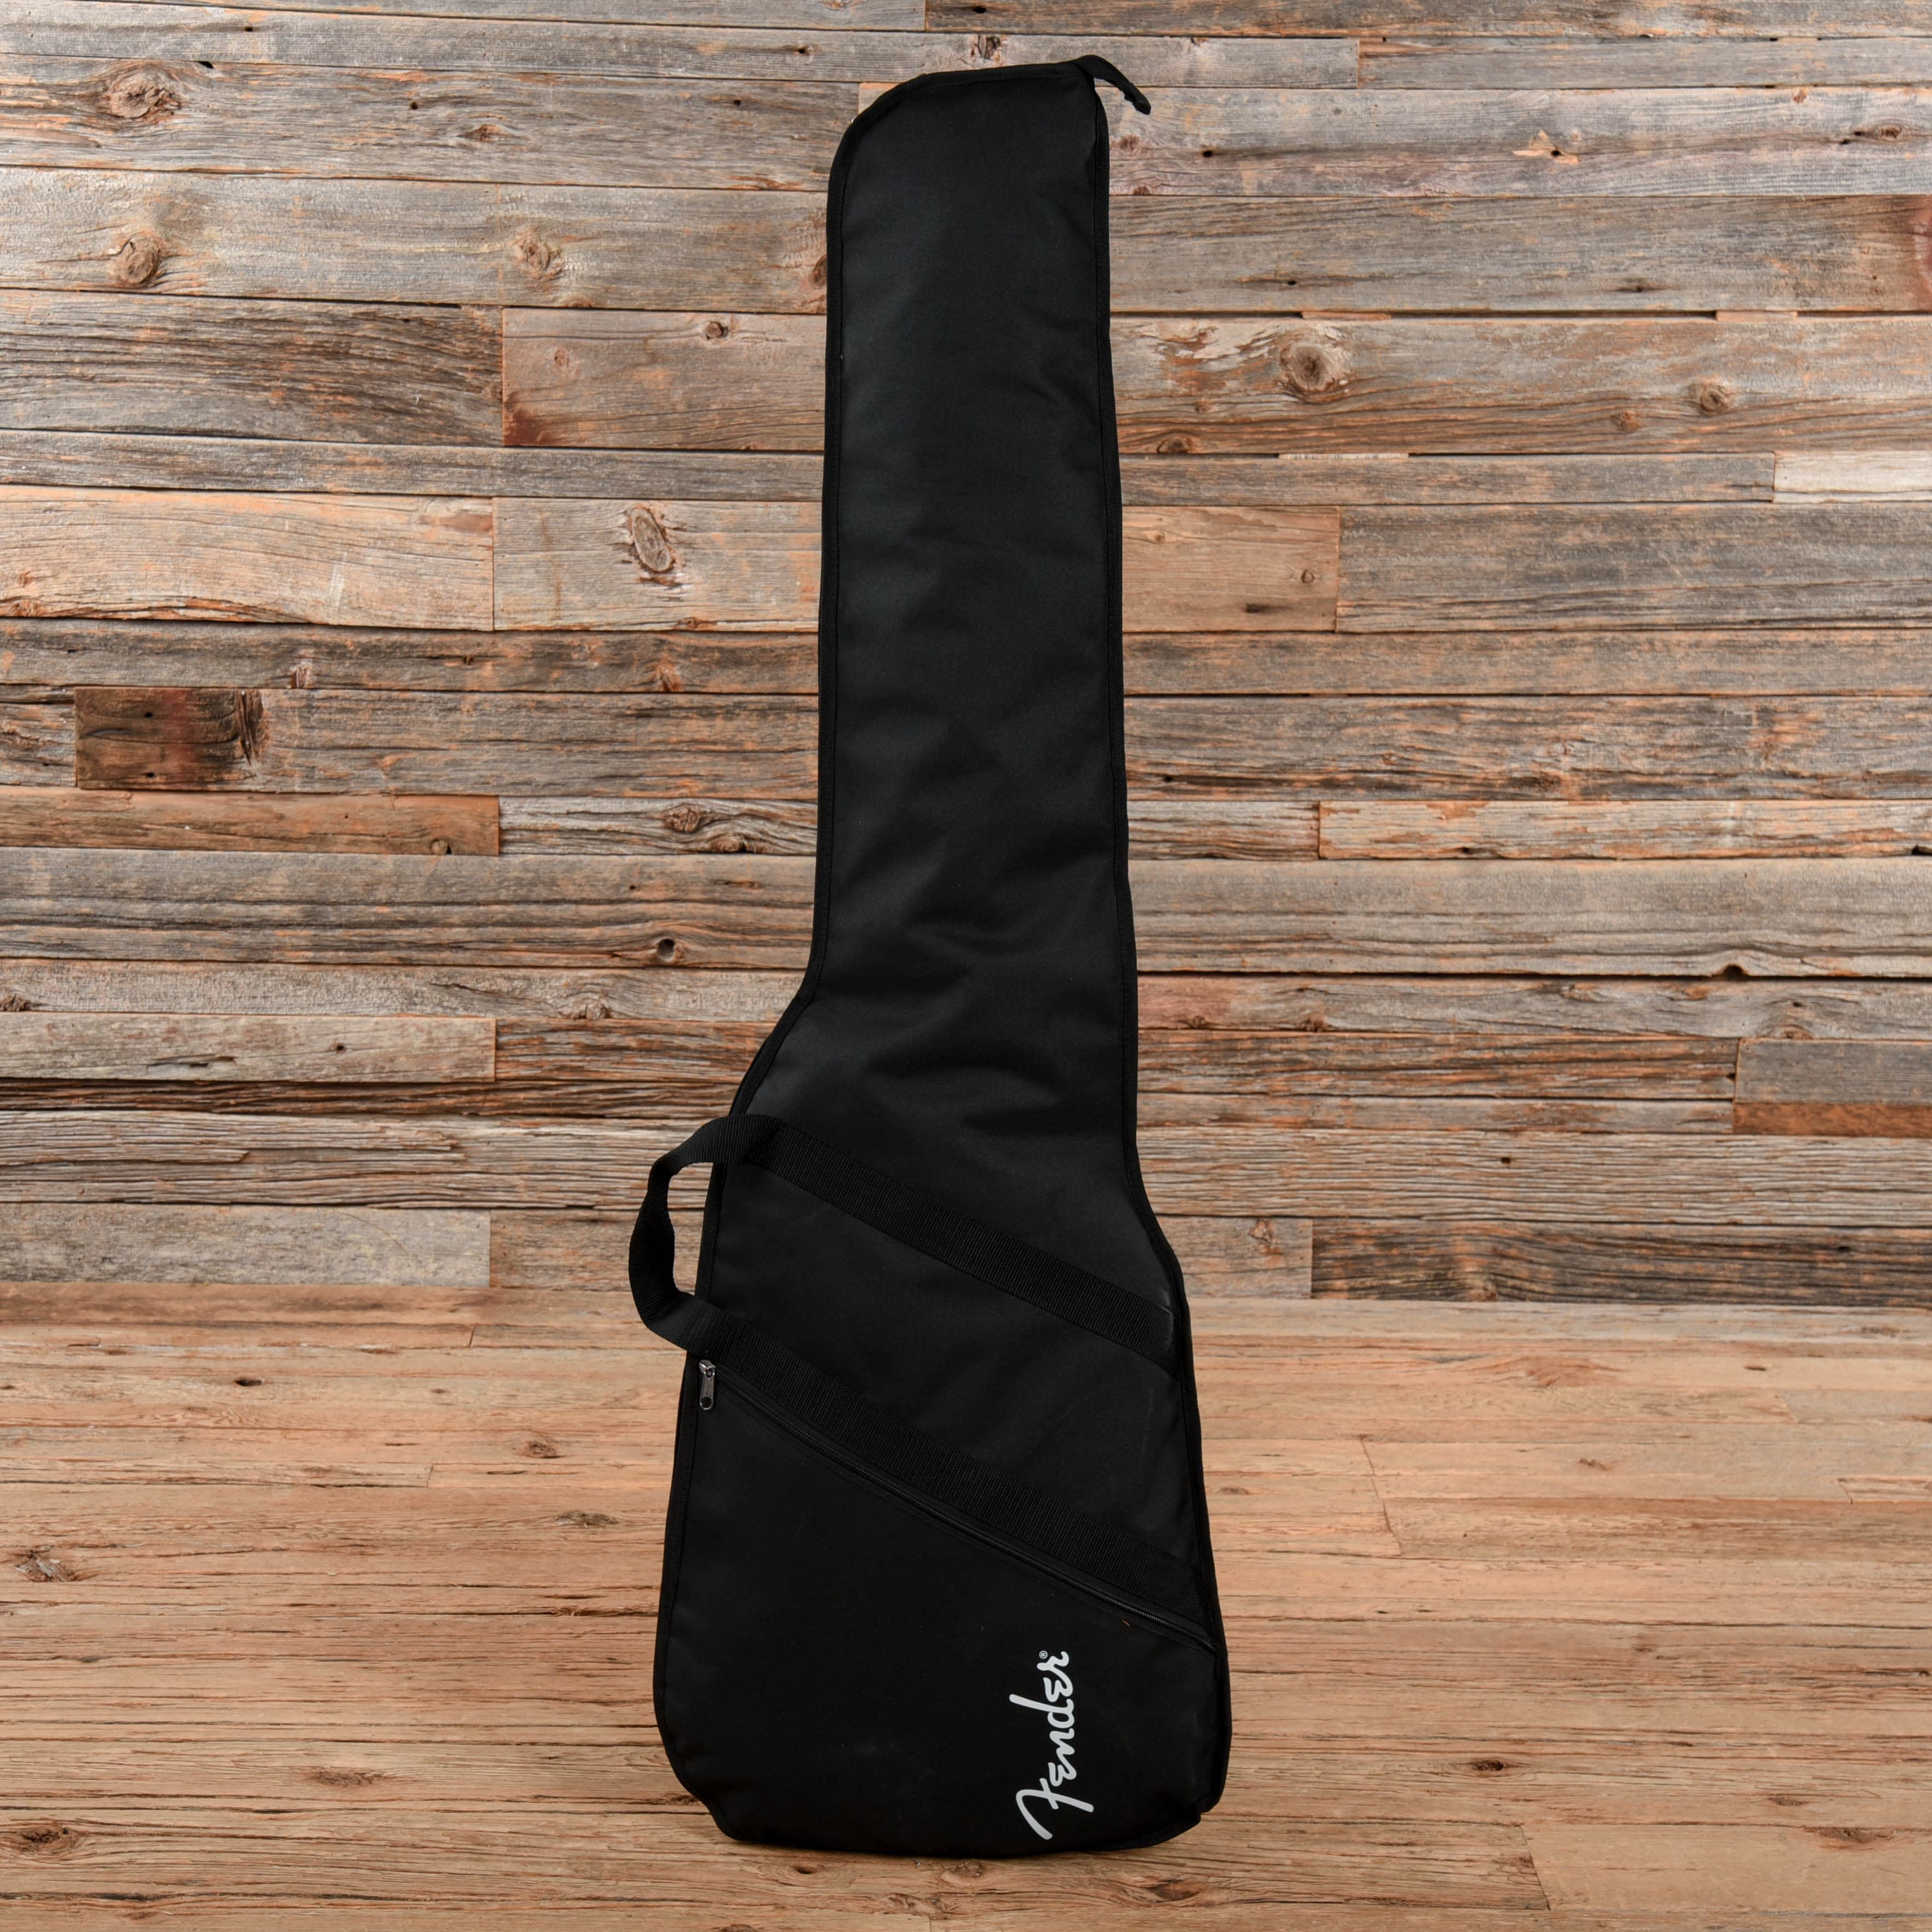 Fender MIJ Traditional Original 50s Precision Bass Butterscotch Blonde 2022 Bass Guitars / 4-String